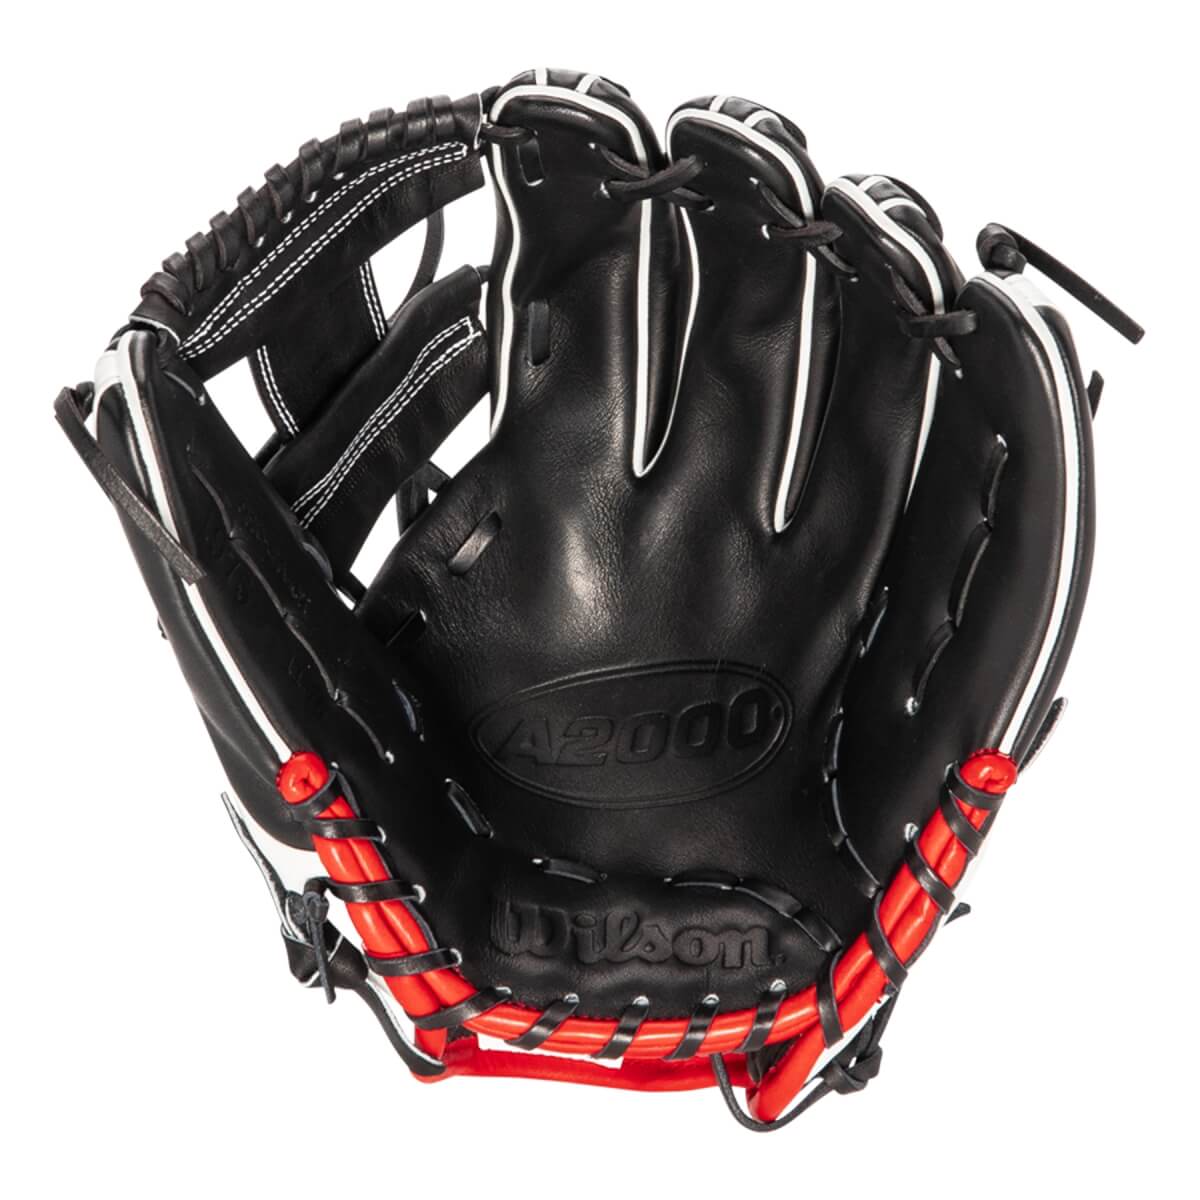 Wilson A2000 1975 11.75" Baseball Glove